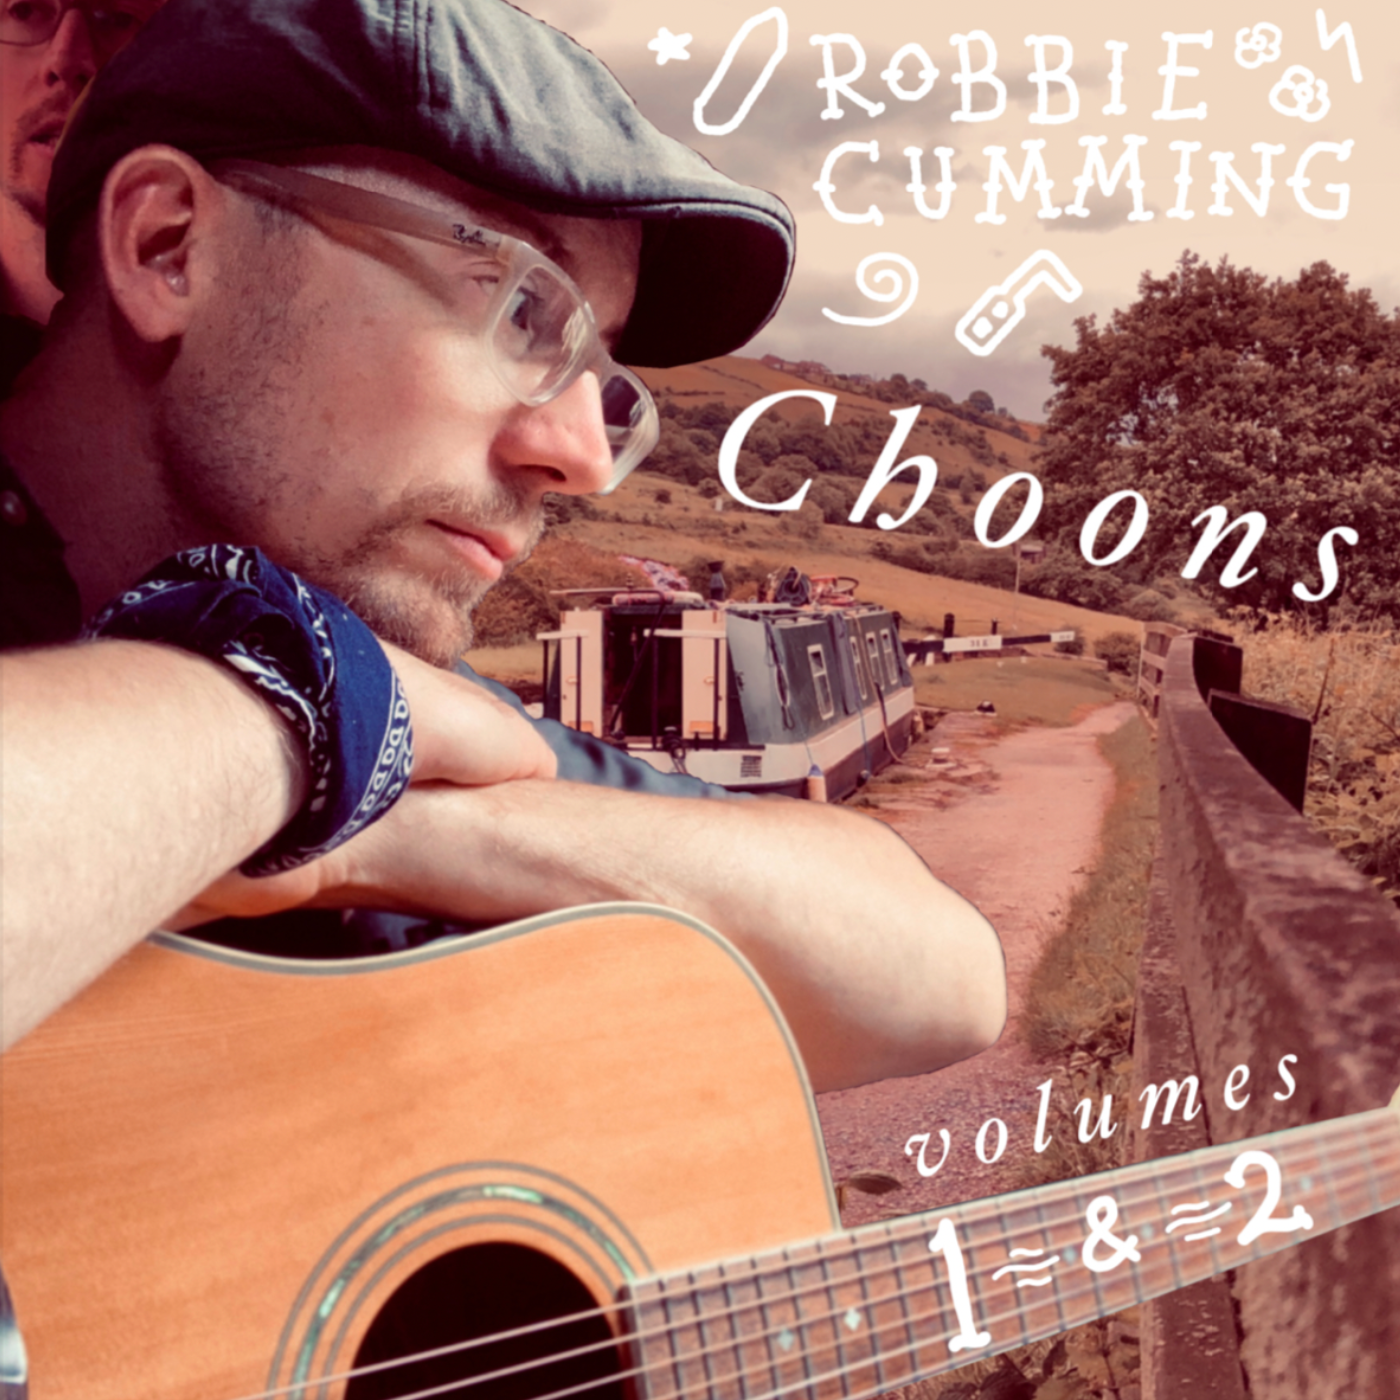 Robbie Cumming Choons Volumes 1 & 2 CD